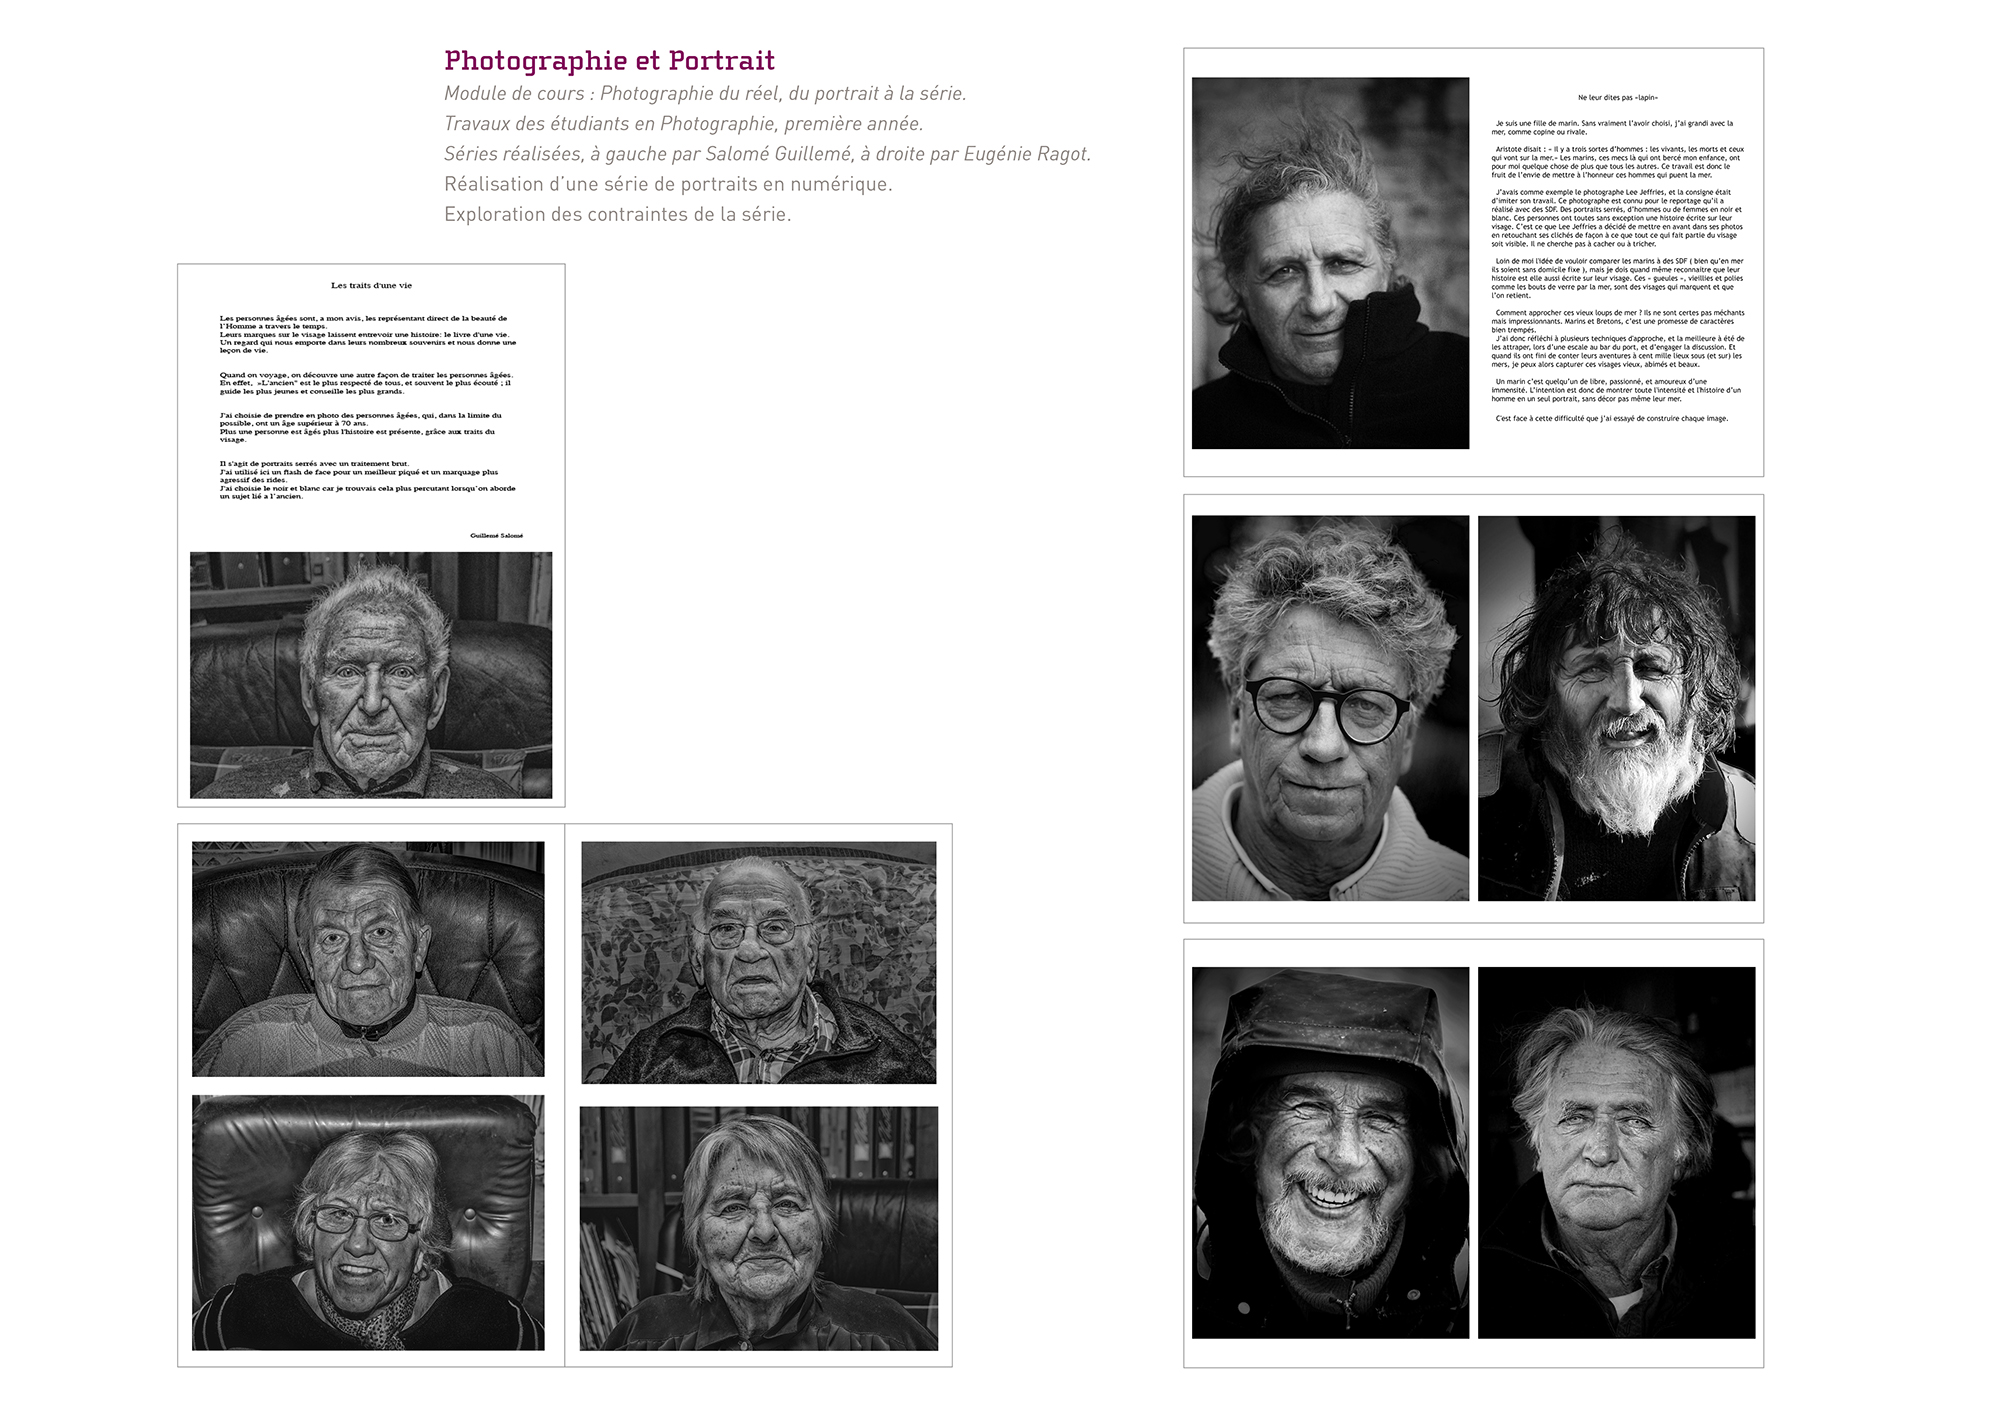 08-Travaux-etudiants-en-formation-photographie-portraits-Guillemet-Raguot